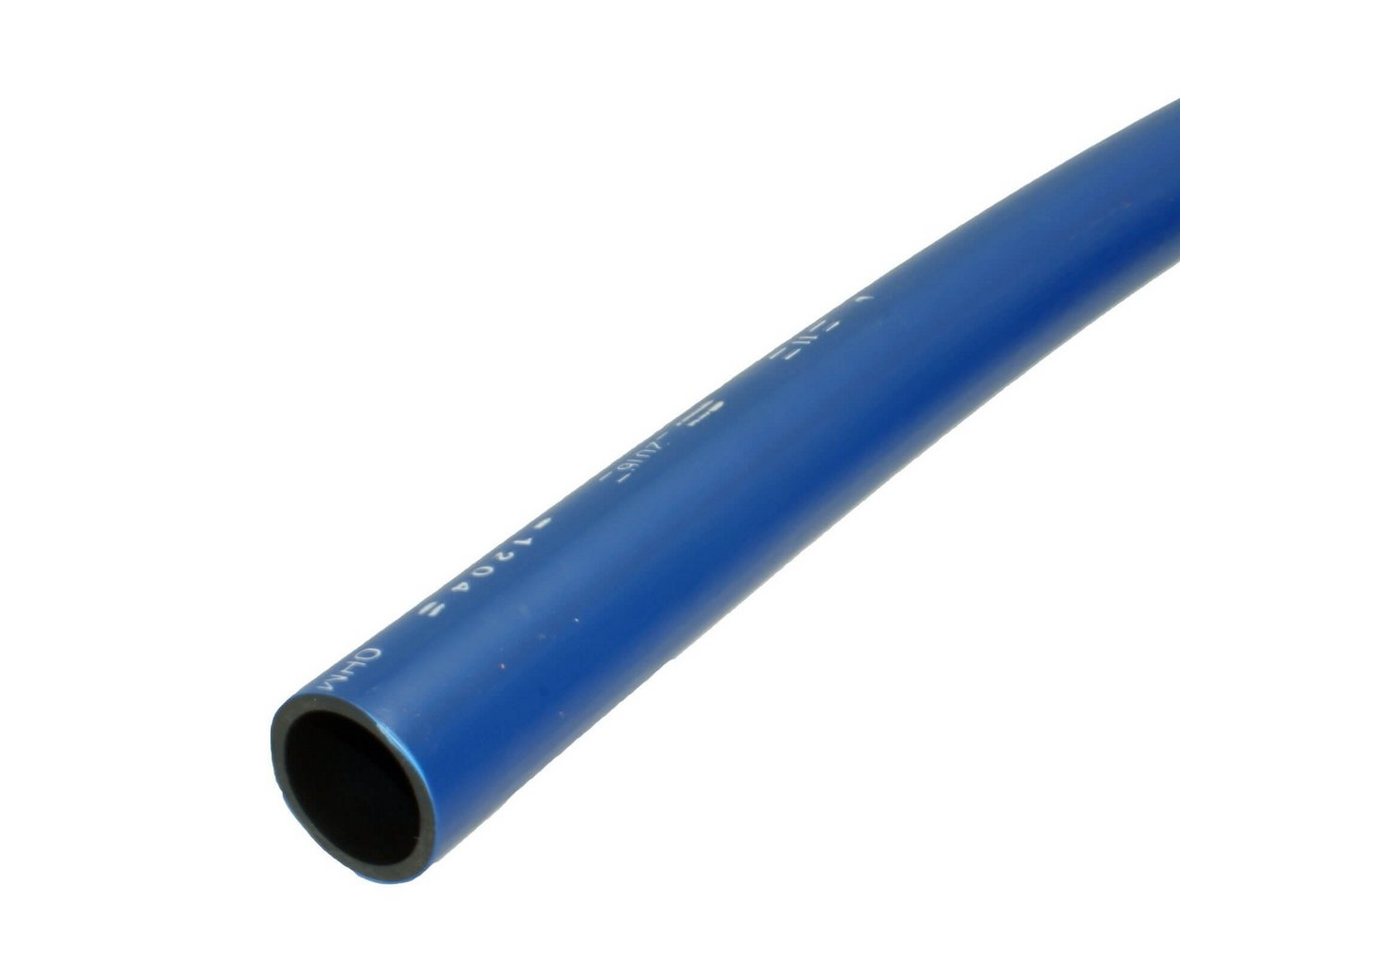 OHM Kunststoffrohrwerk PE-Rohr PE-RC Rohr PE100 PN16 25m 2 Zoll 63mm Trinkwasser blau von OHM Kunststoffrohrwerk